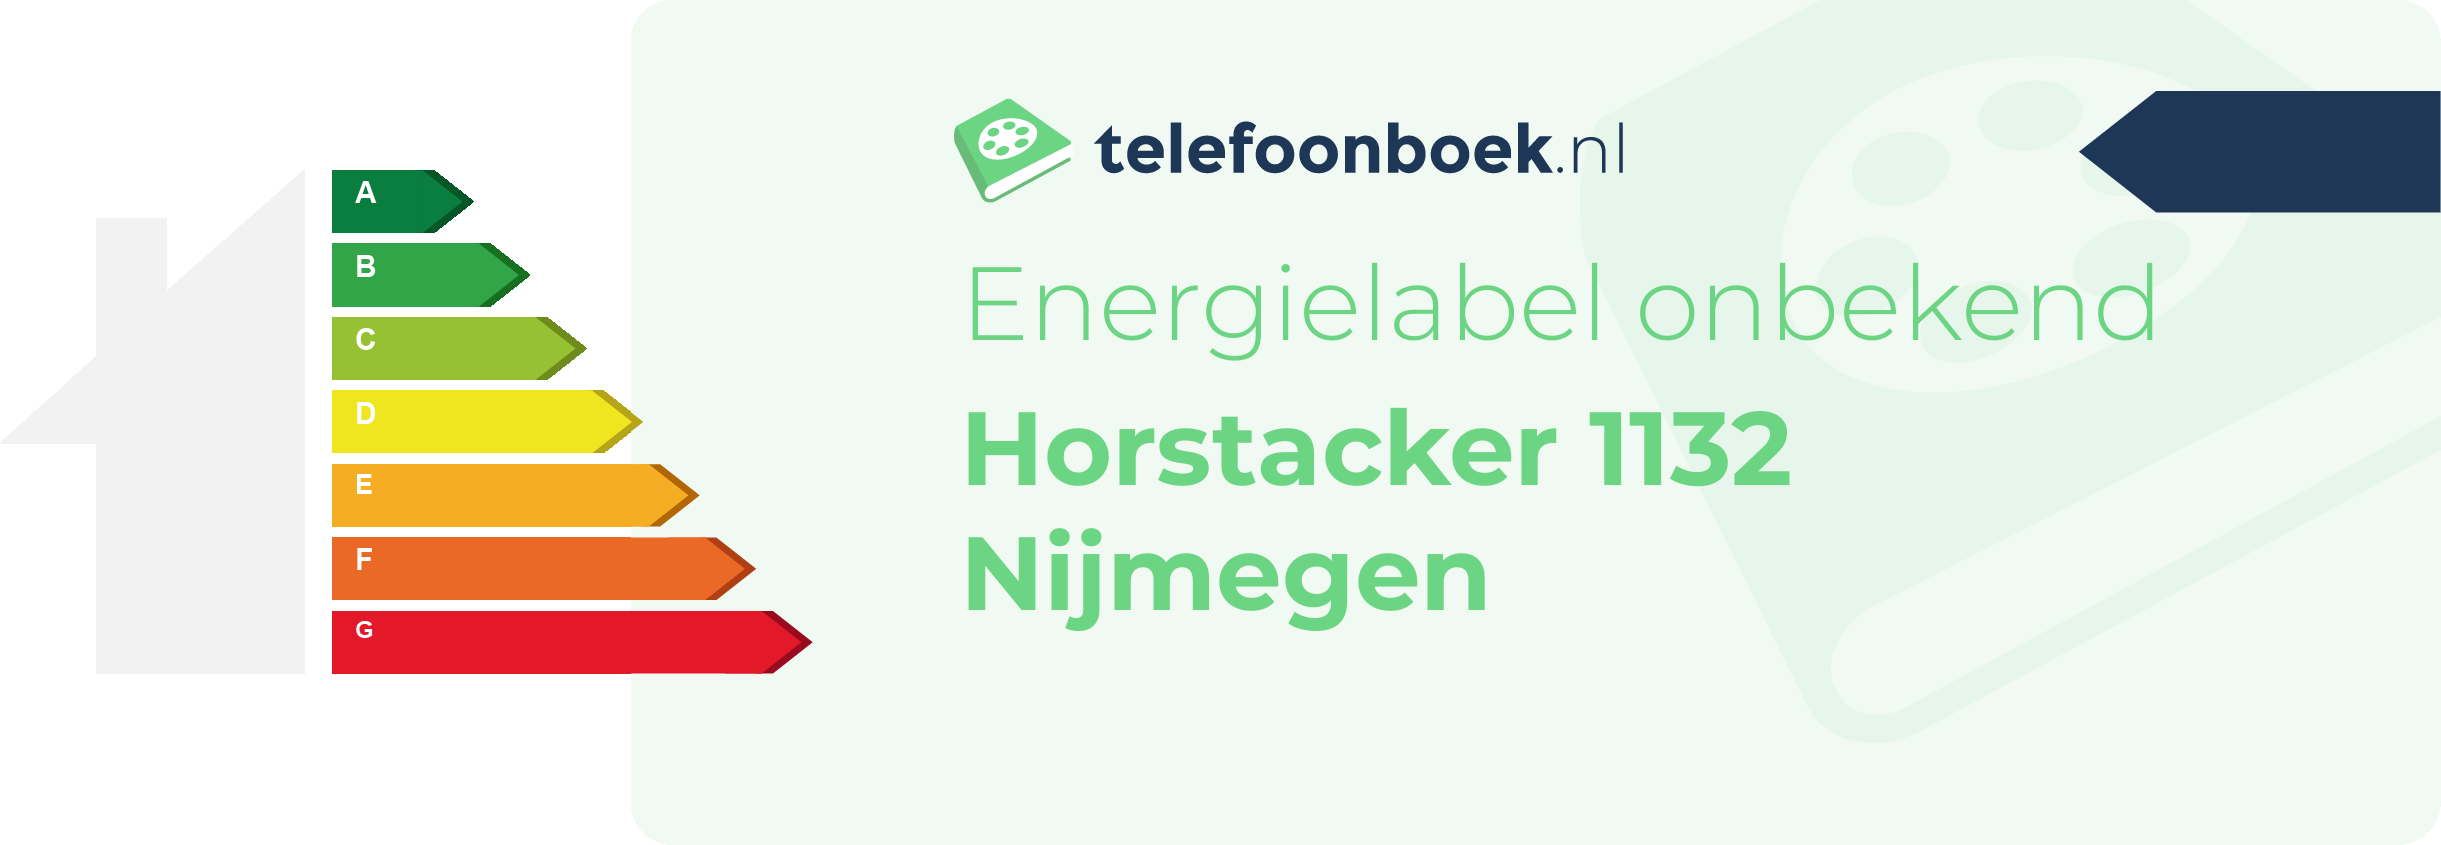 Energielabel Horstacker 1132 Nijmegen